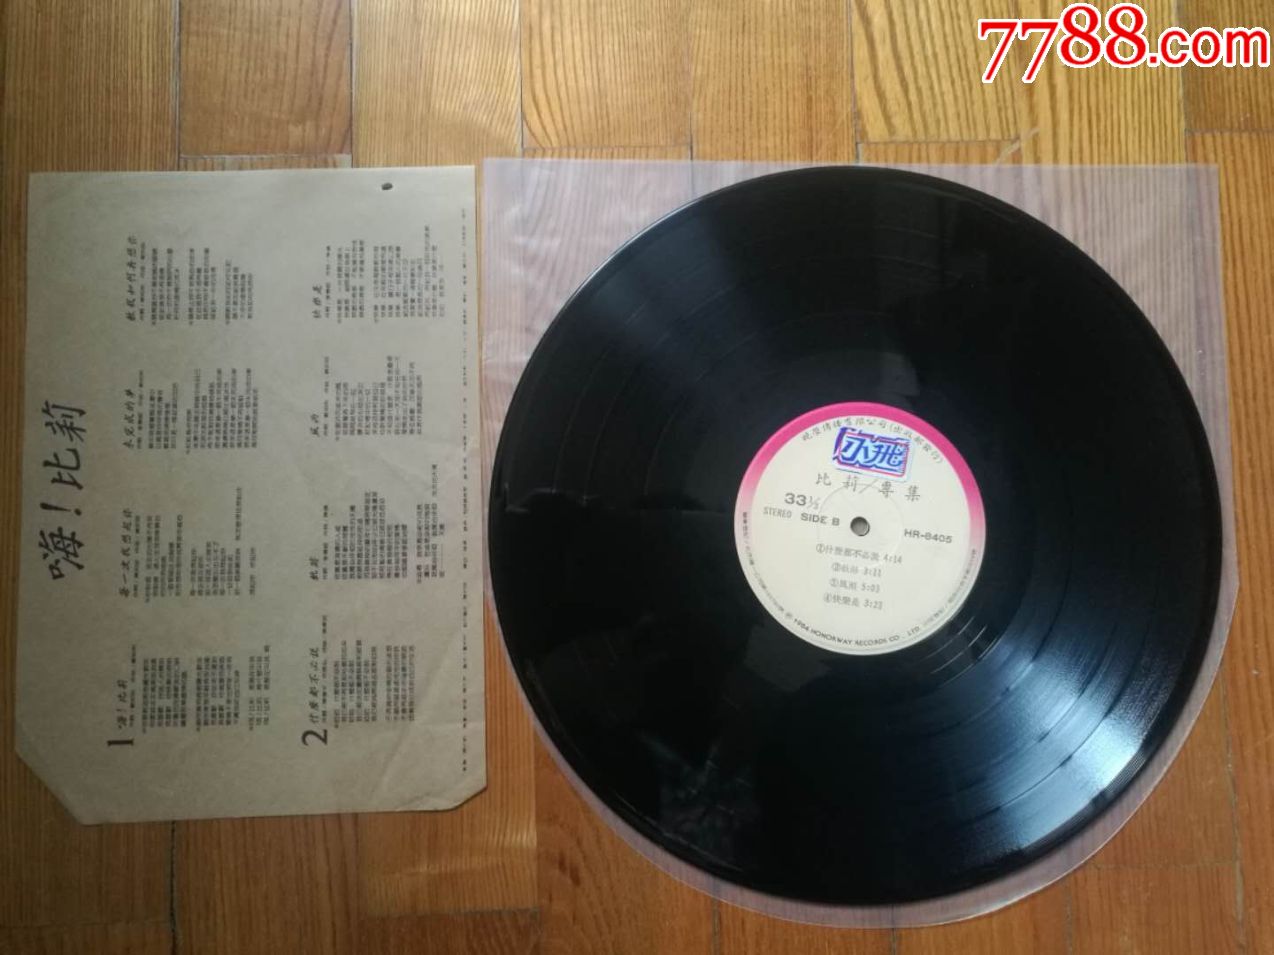 黑胶唱片LP:比莉-什么都不必说(台湾原版)~晓荣